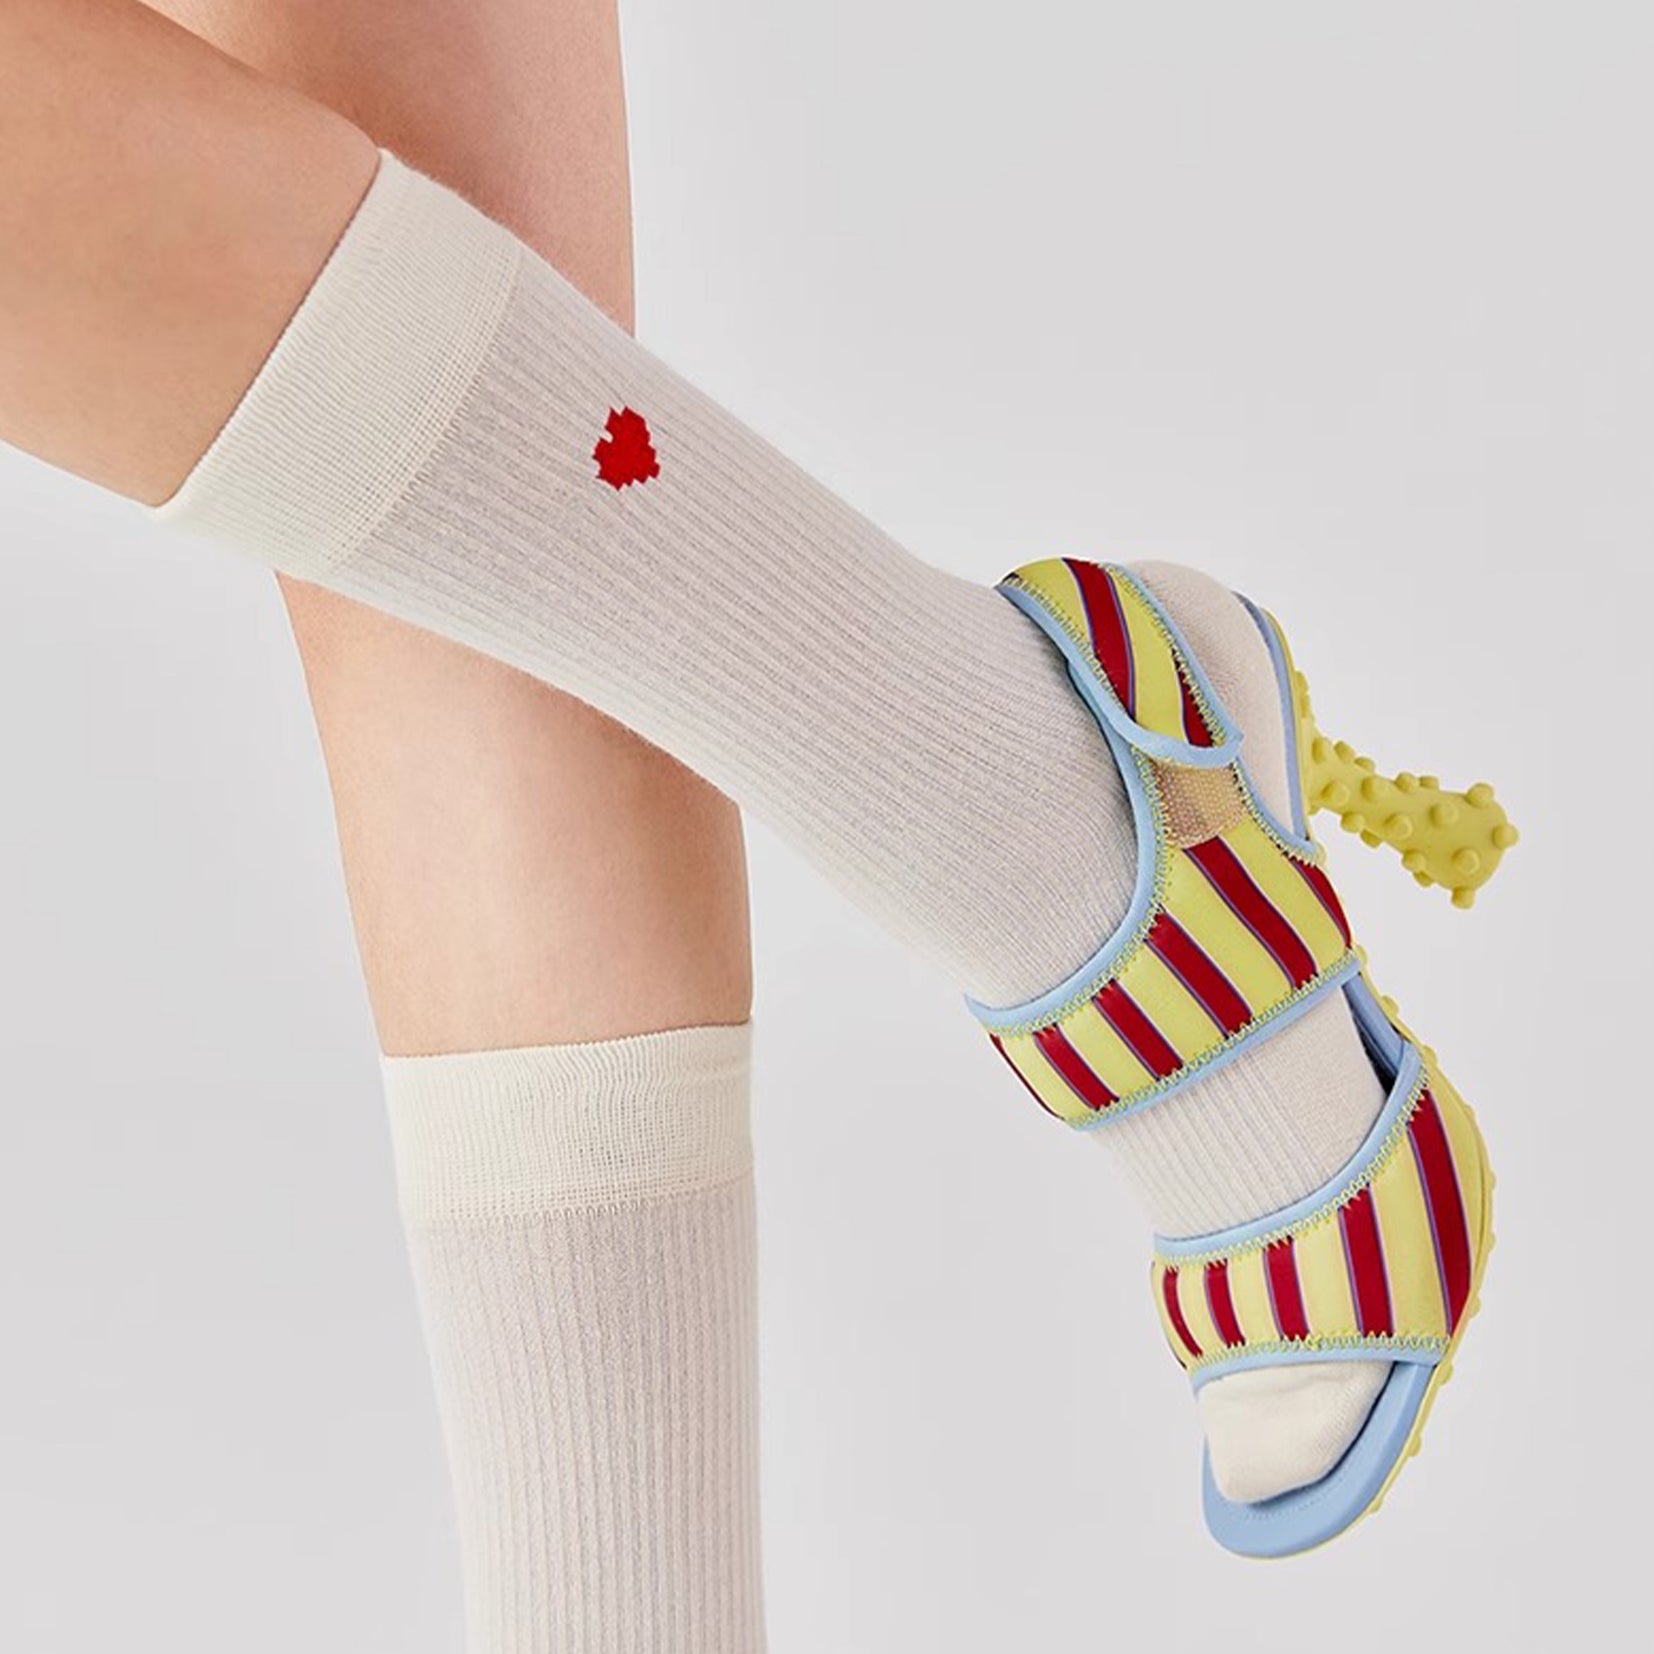 Heart mid-calf sock - off-white